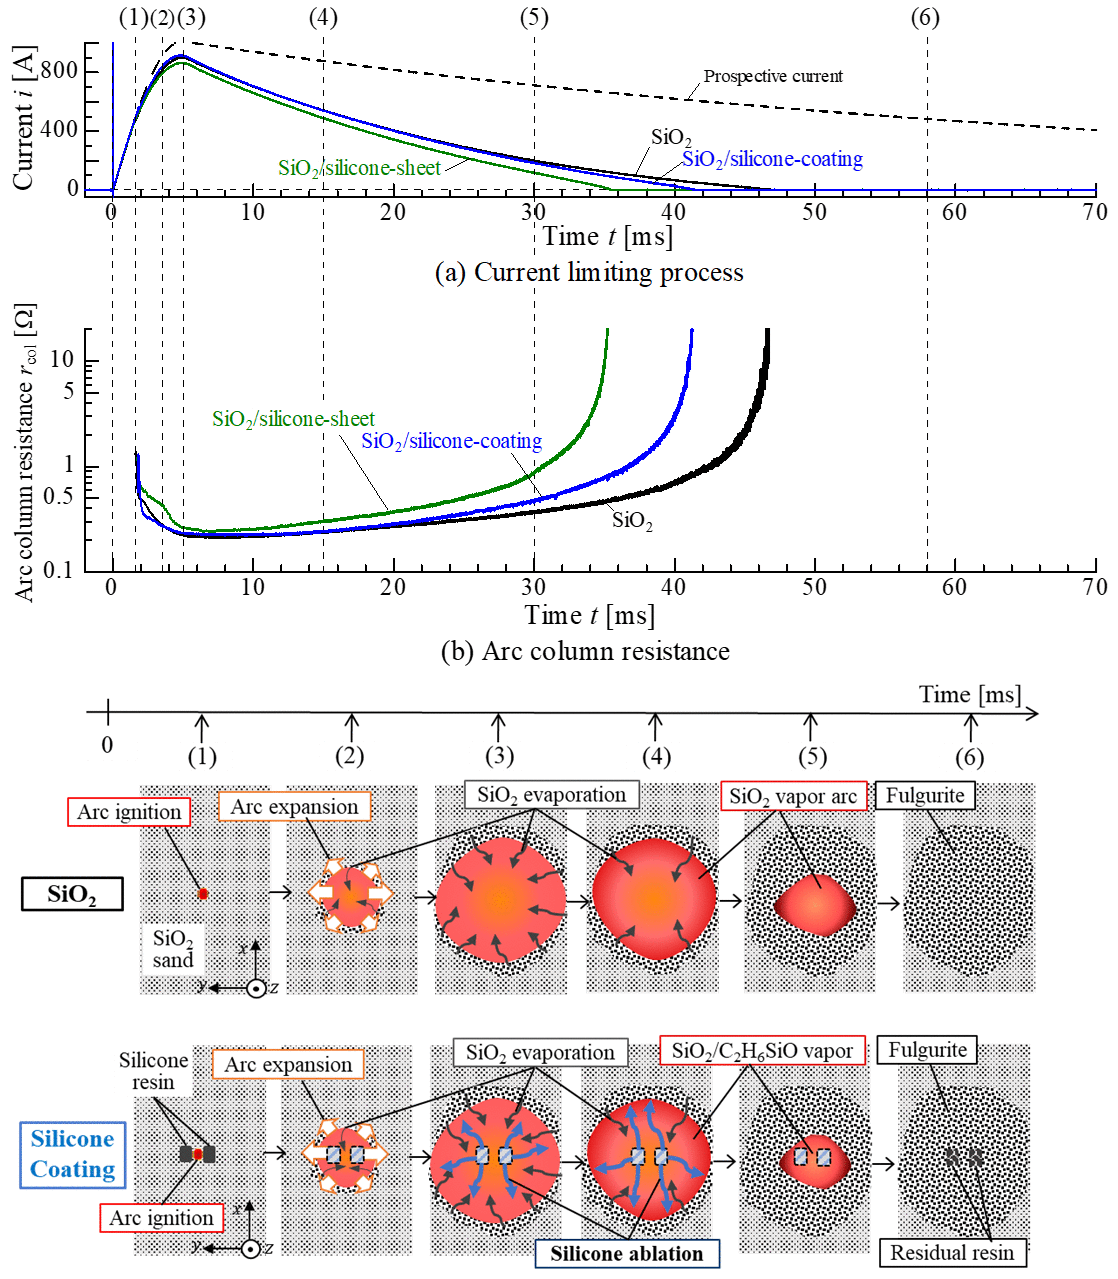 上図：SiO2/silicone材併用時における電流の過渡推移および過渡アーク抵抗の上昇波形。下図：Silicone材併用時のアーク抵抗上昇メカニズム（模式図）。